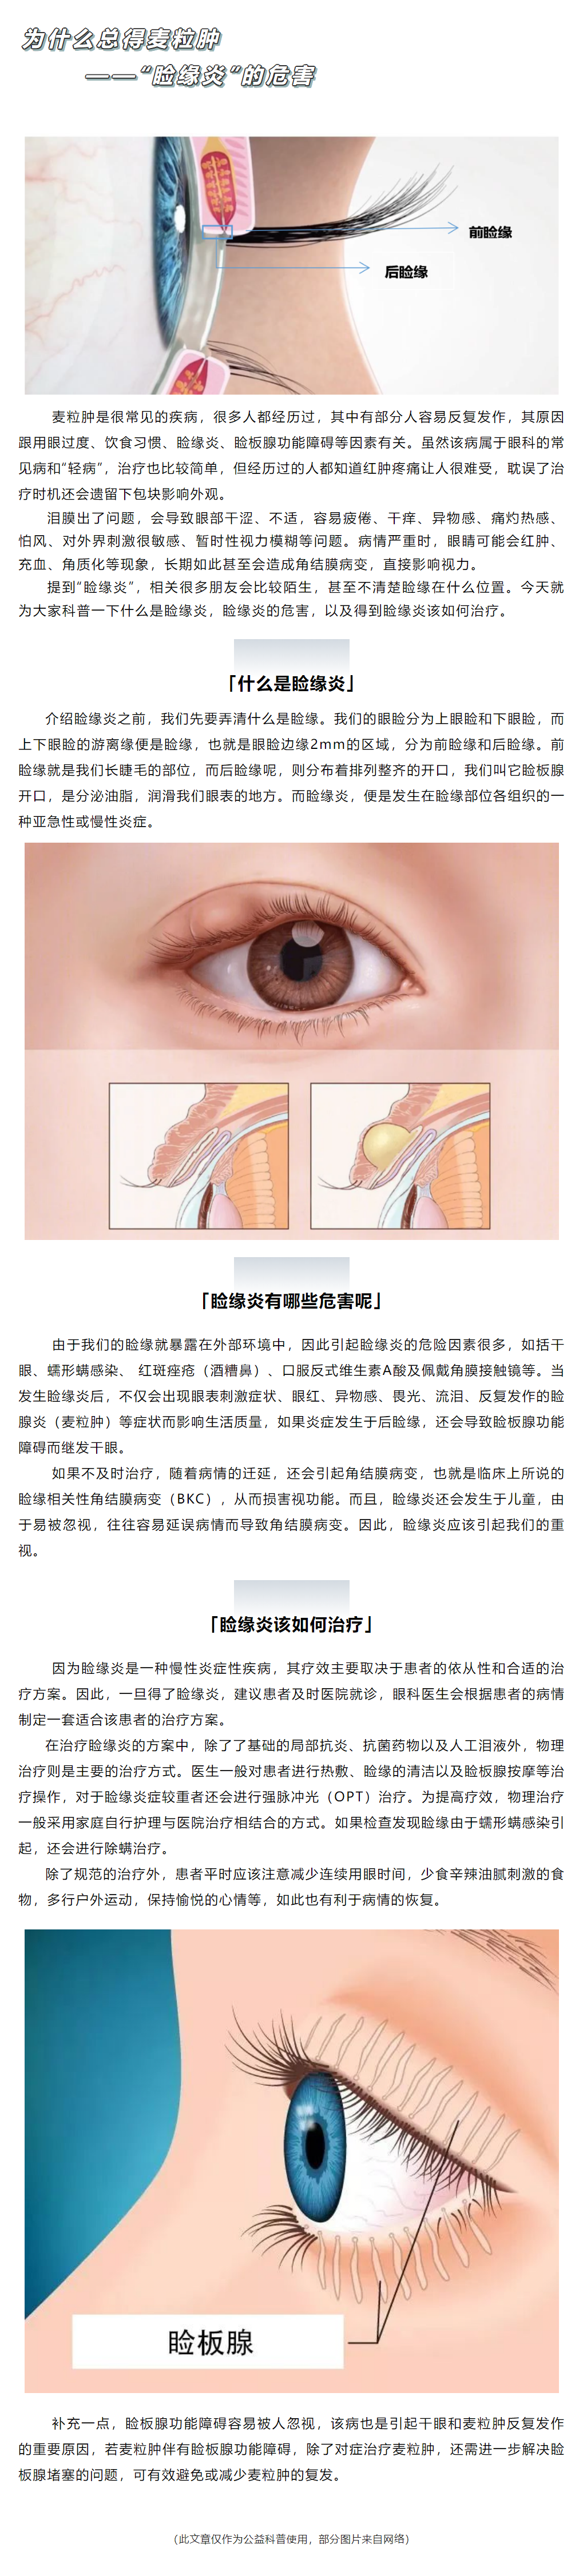 图1-8 双侧溃疡性睑缘炎-眼前节疾病-医学